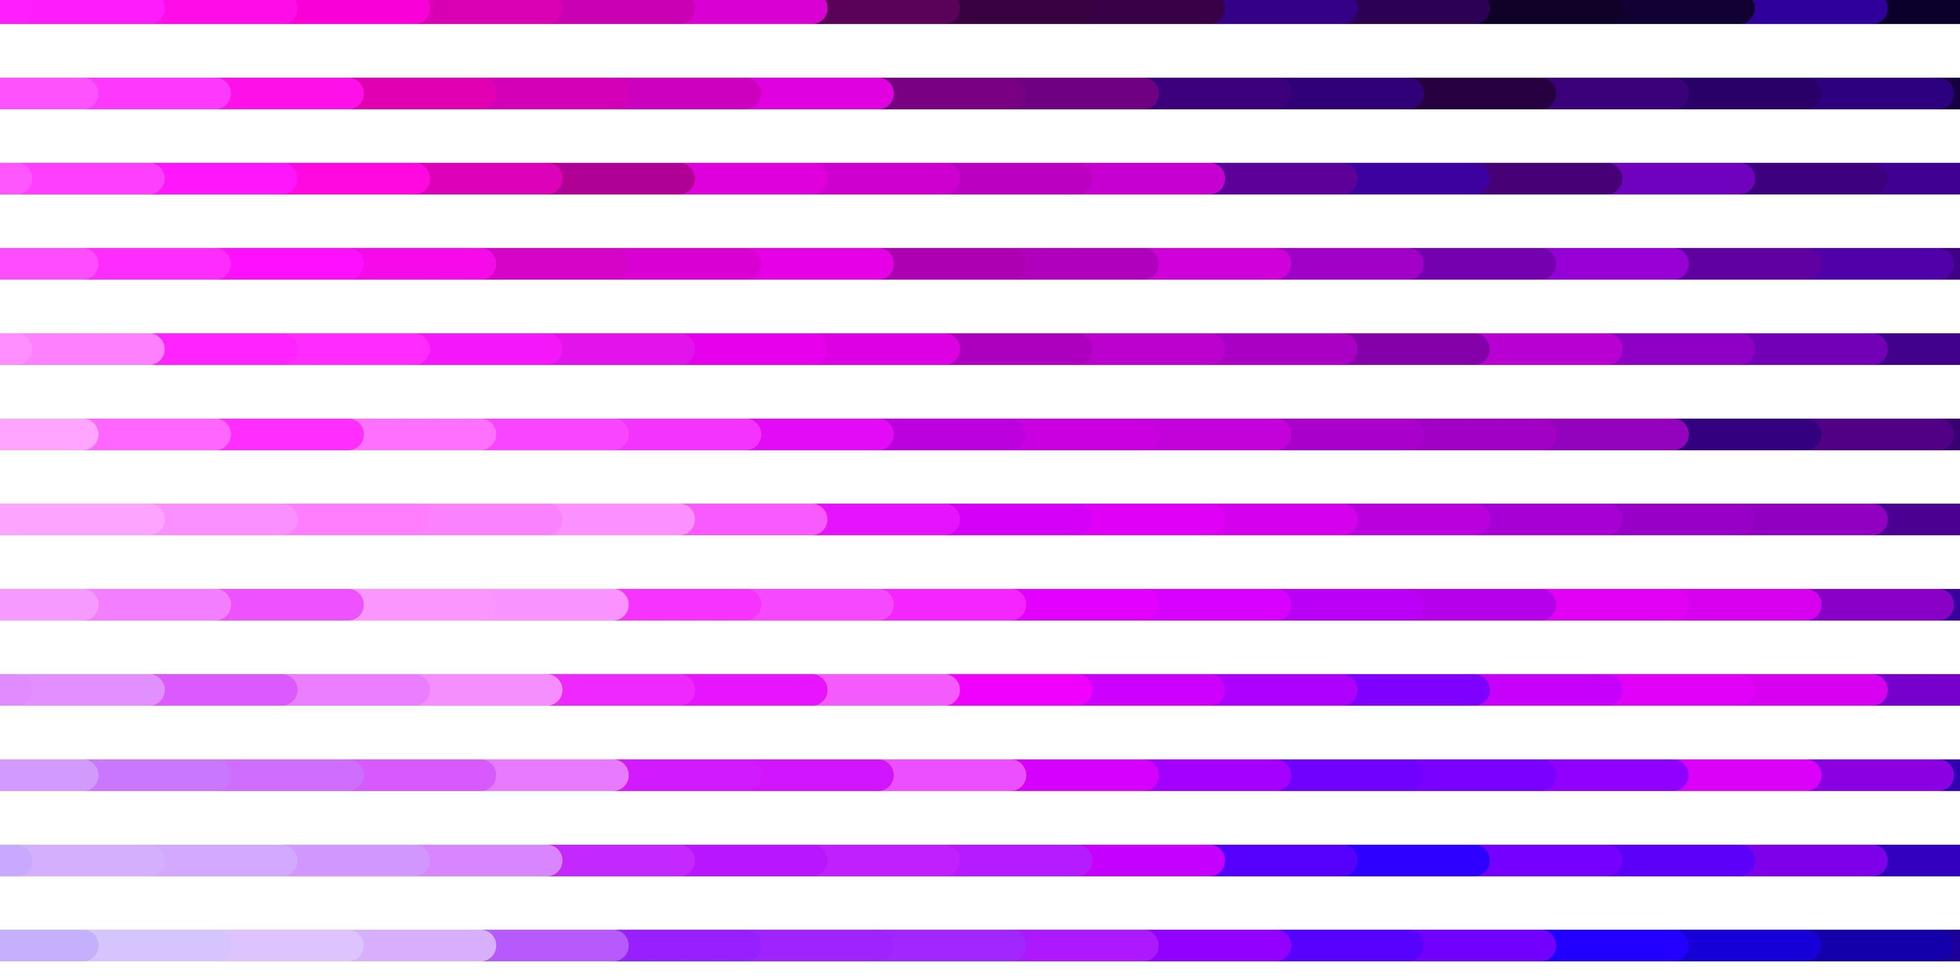 ljusrosa, blå vektormönster med linjer. vektor